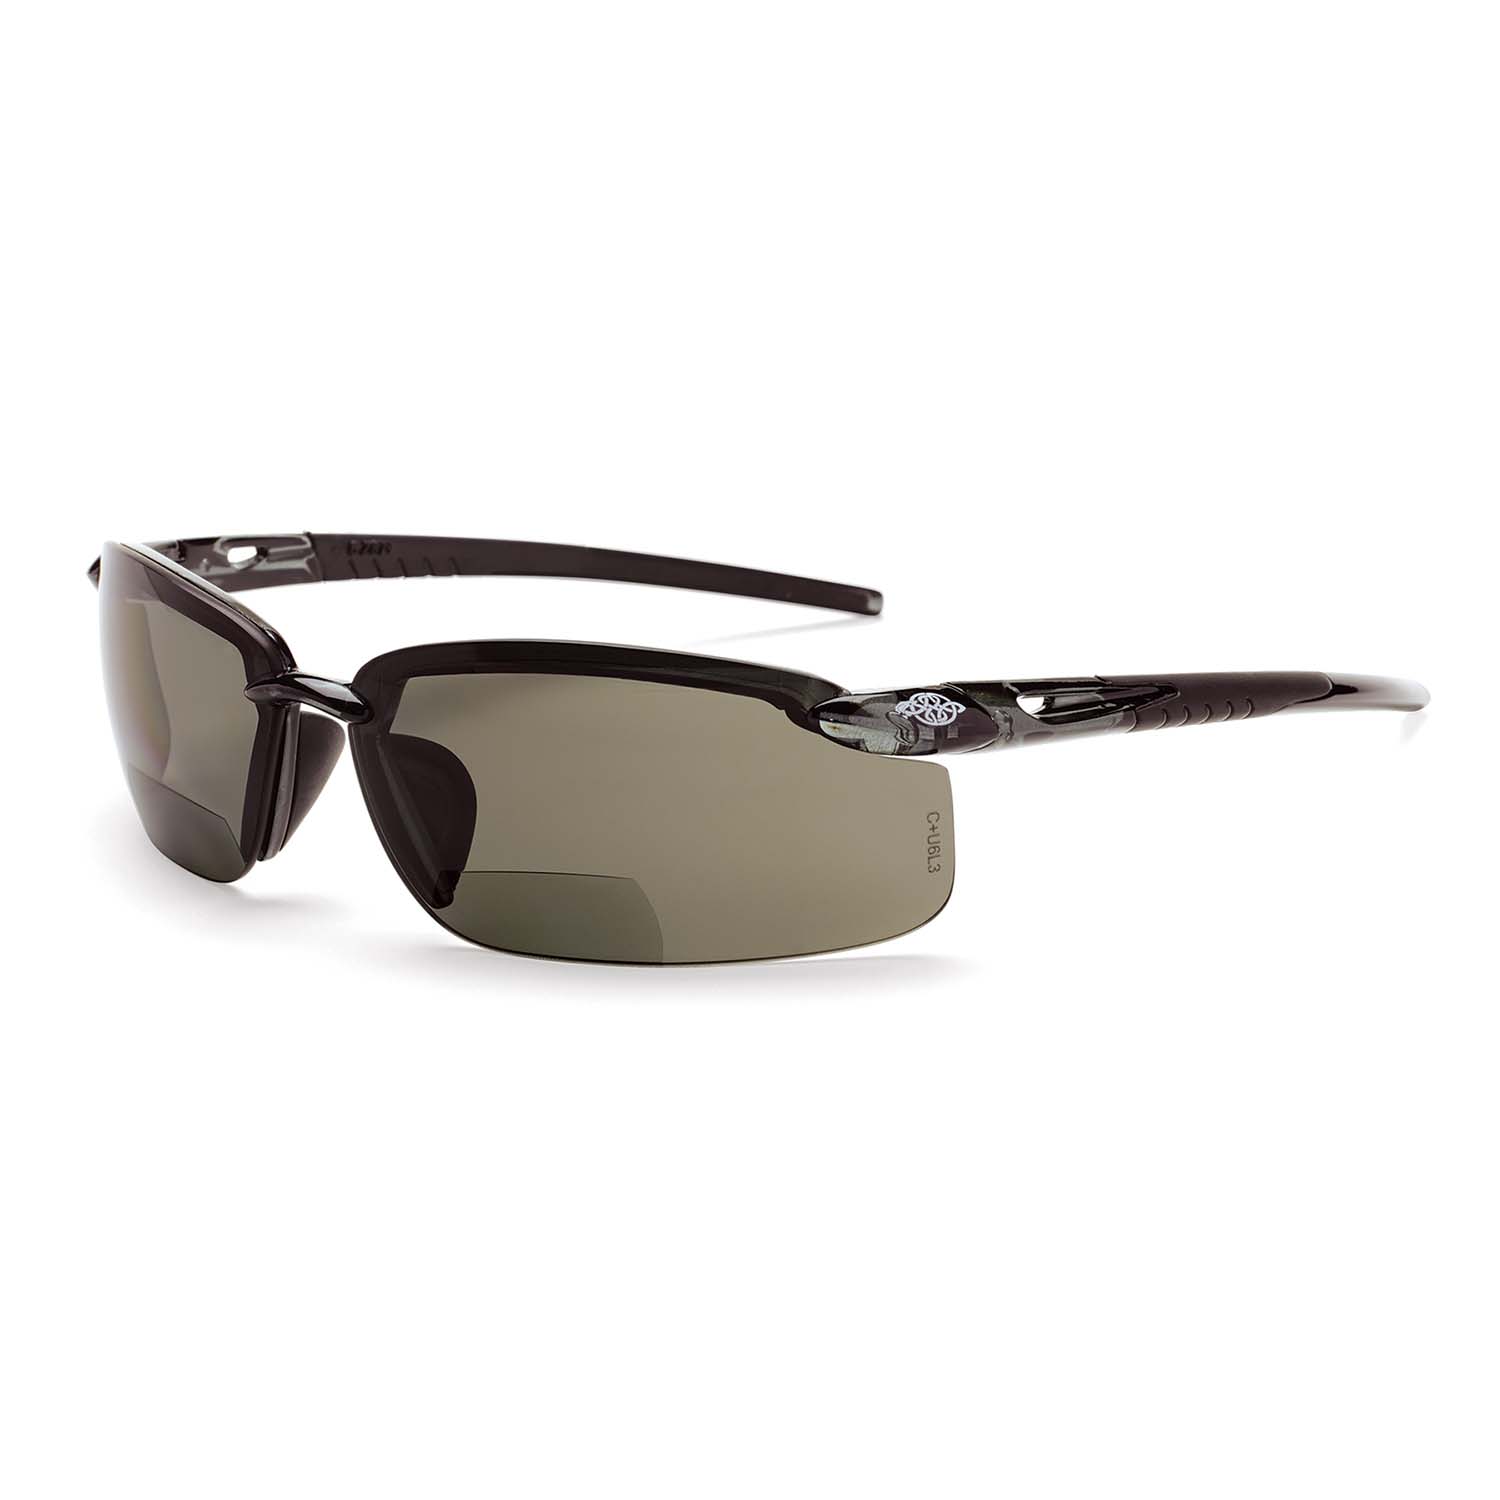 ES5 Bifocal Safety Eyewear - Crystal Black Frame - Polarized Smoke Lens - 1.5 Diopter